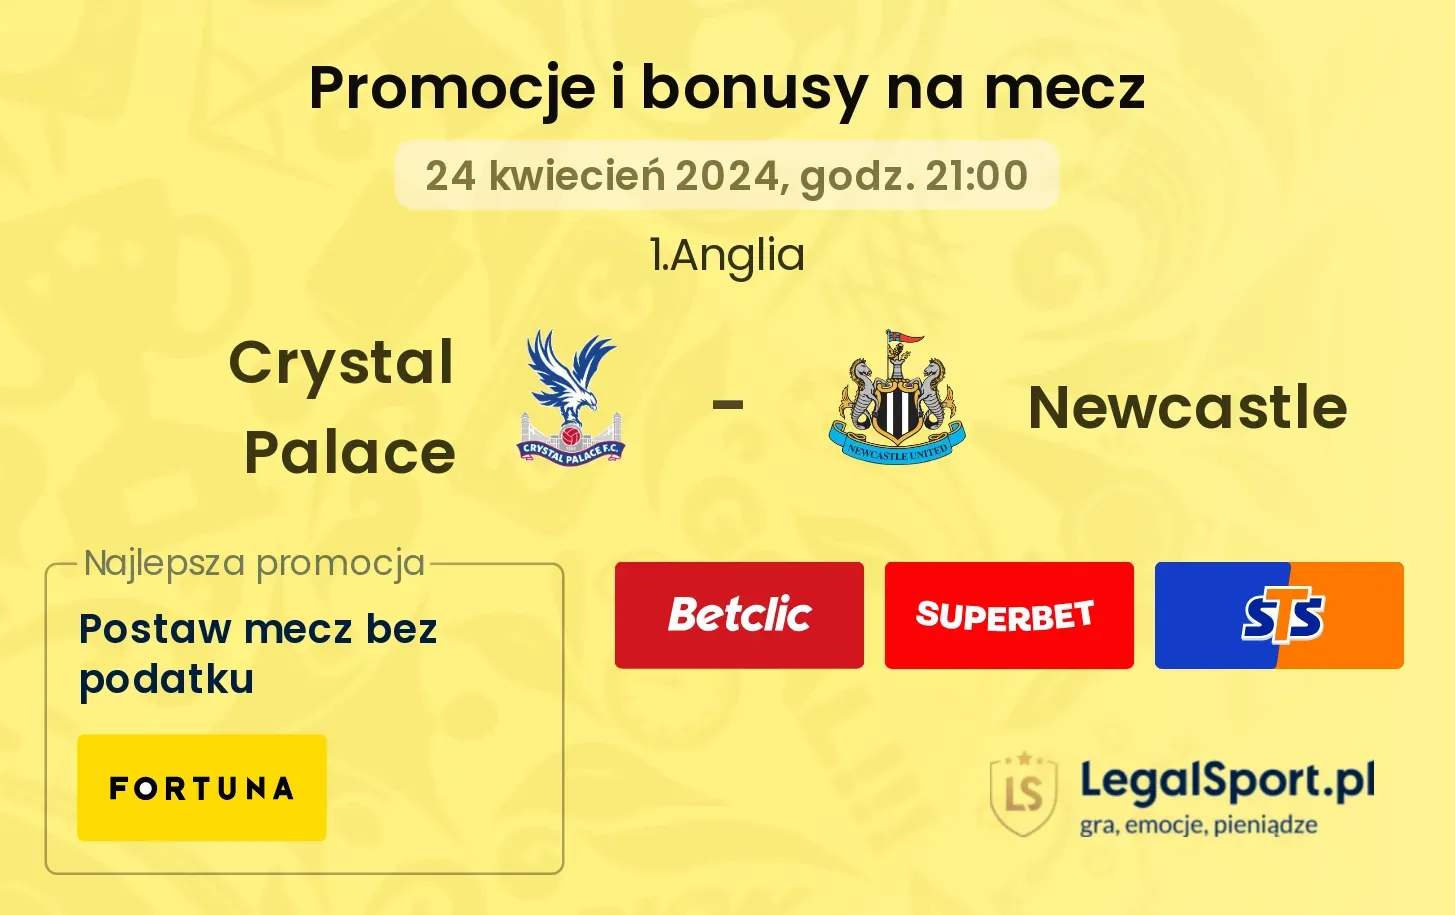 Crystal Palace - Newcastle promocje bonusy na mecz